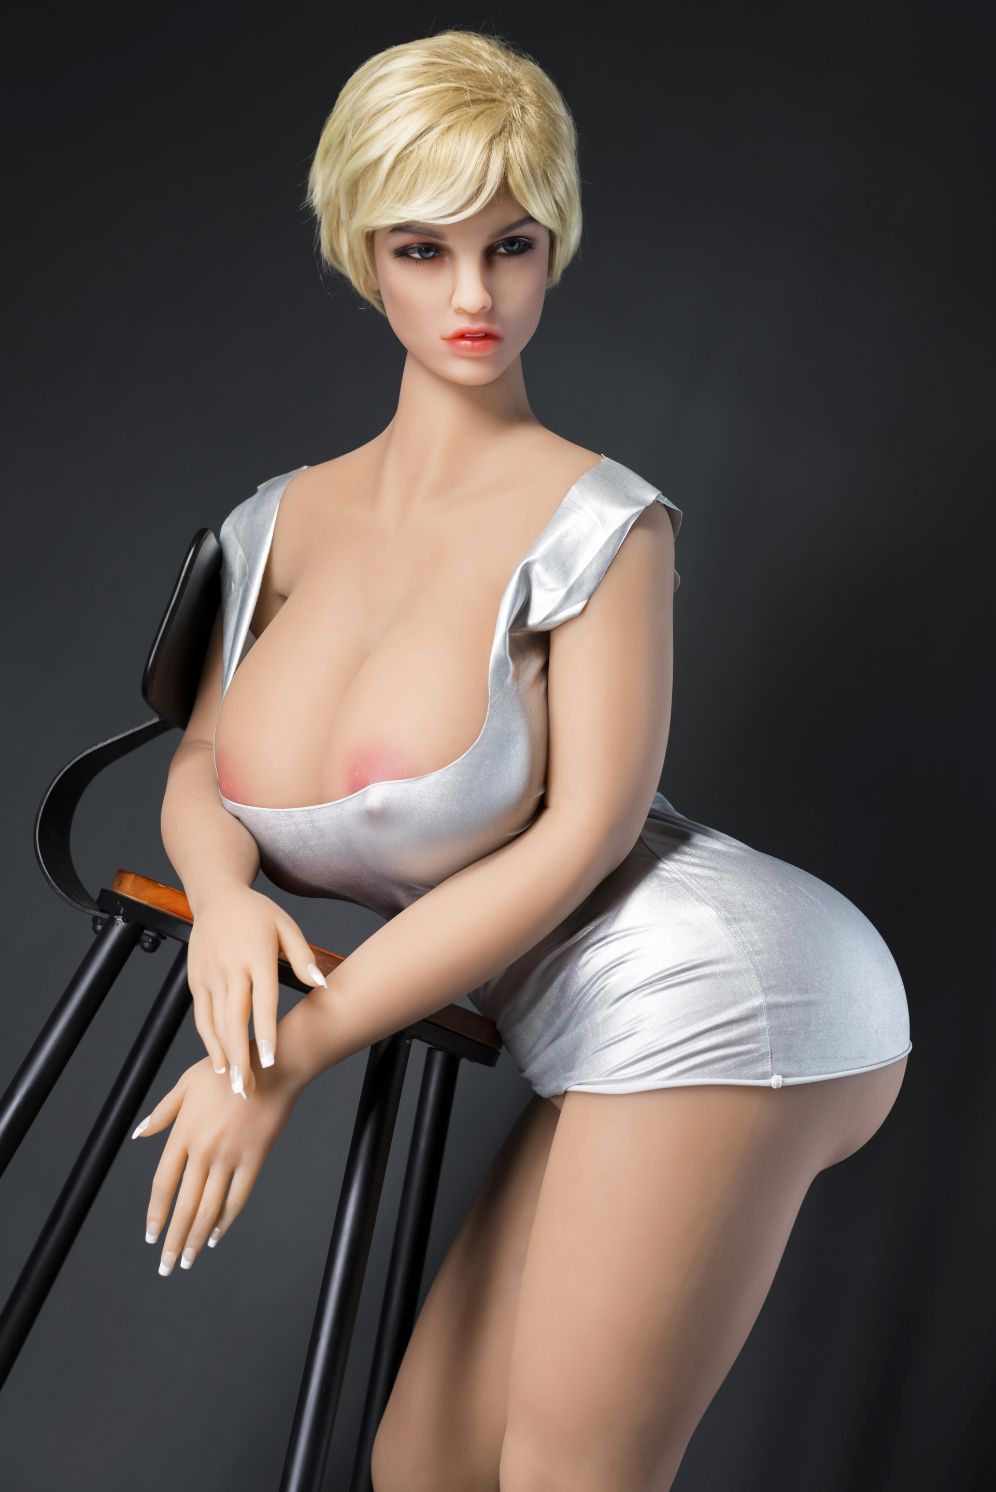 tyanna 163cm blonde curvy hr big boobs athletic tpe bbw sex doll(3)